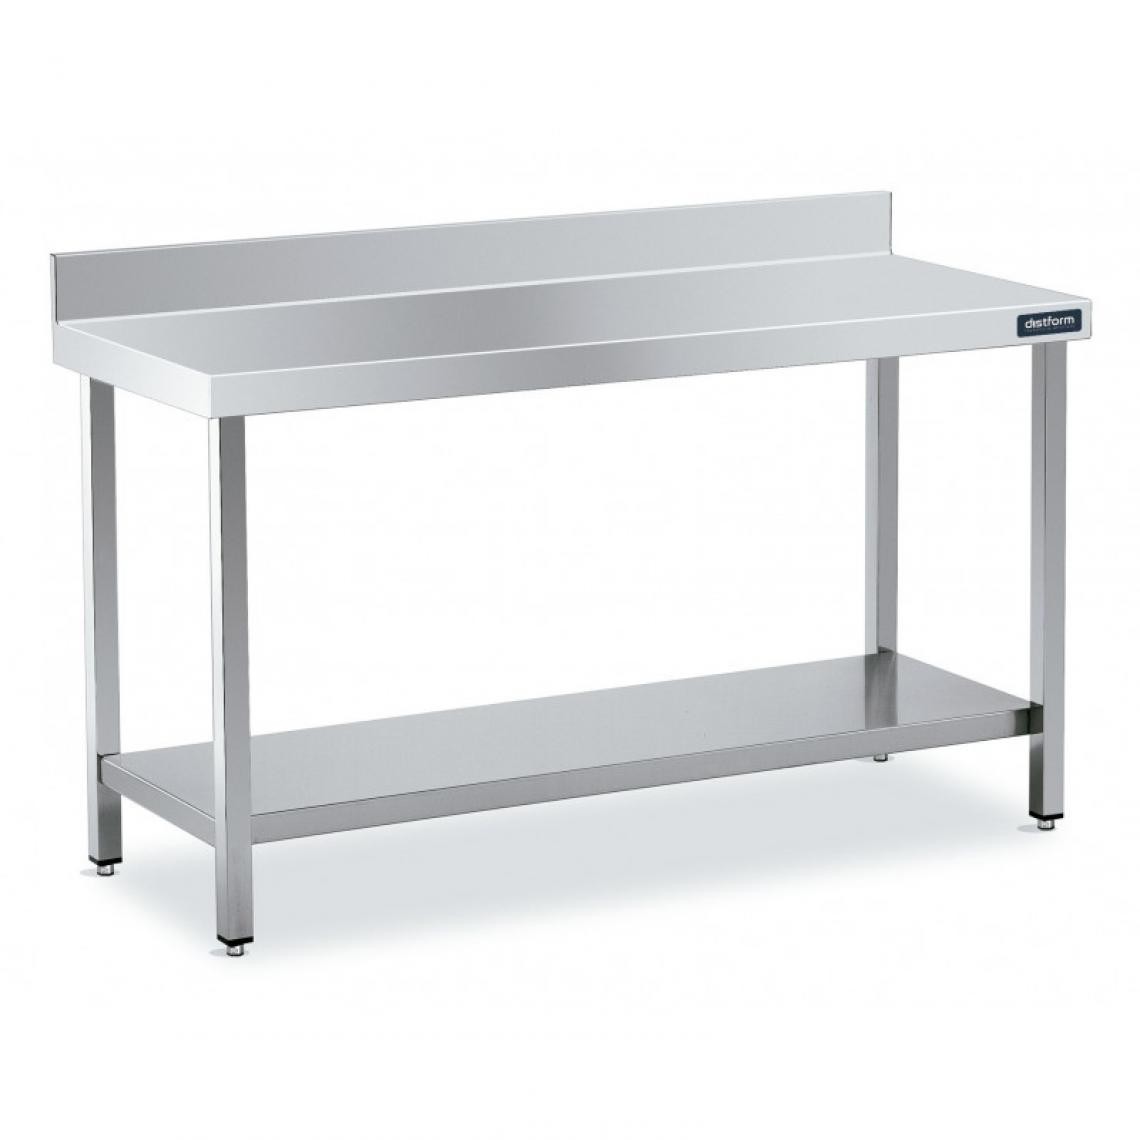 DISTFORM - Table Adossée en Inox avec 1 étagère Profondeur 600 mm - Distform - Acier inoxydable1200x600 - Tables à manger